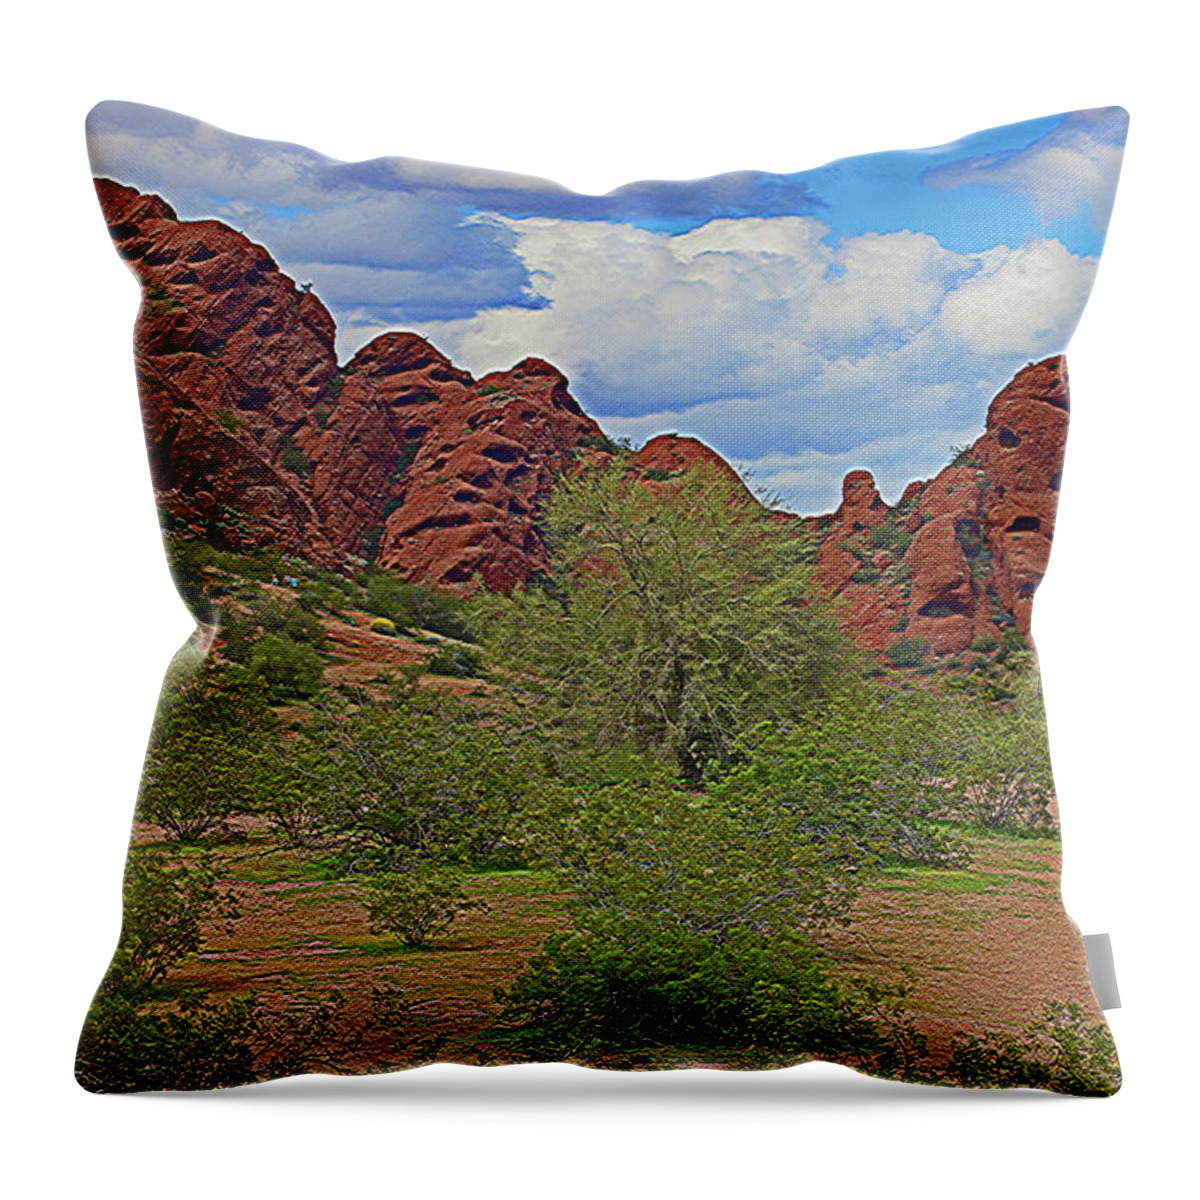 Papago Park Phoenix Arizona Throw Pillow featuring the digital art Papago Park Phoenix Arizona #3 by Tom Janca